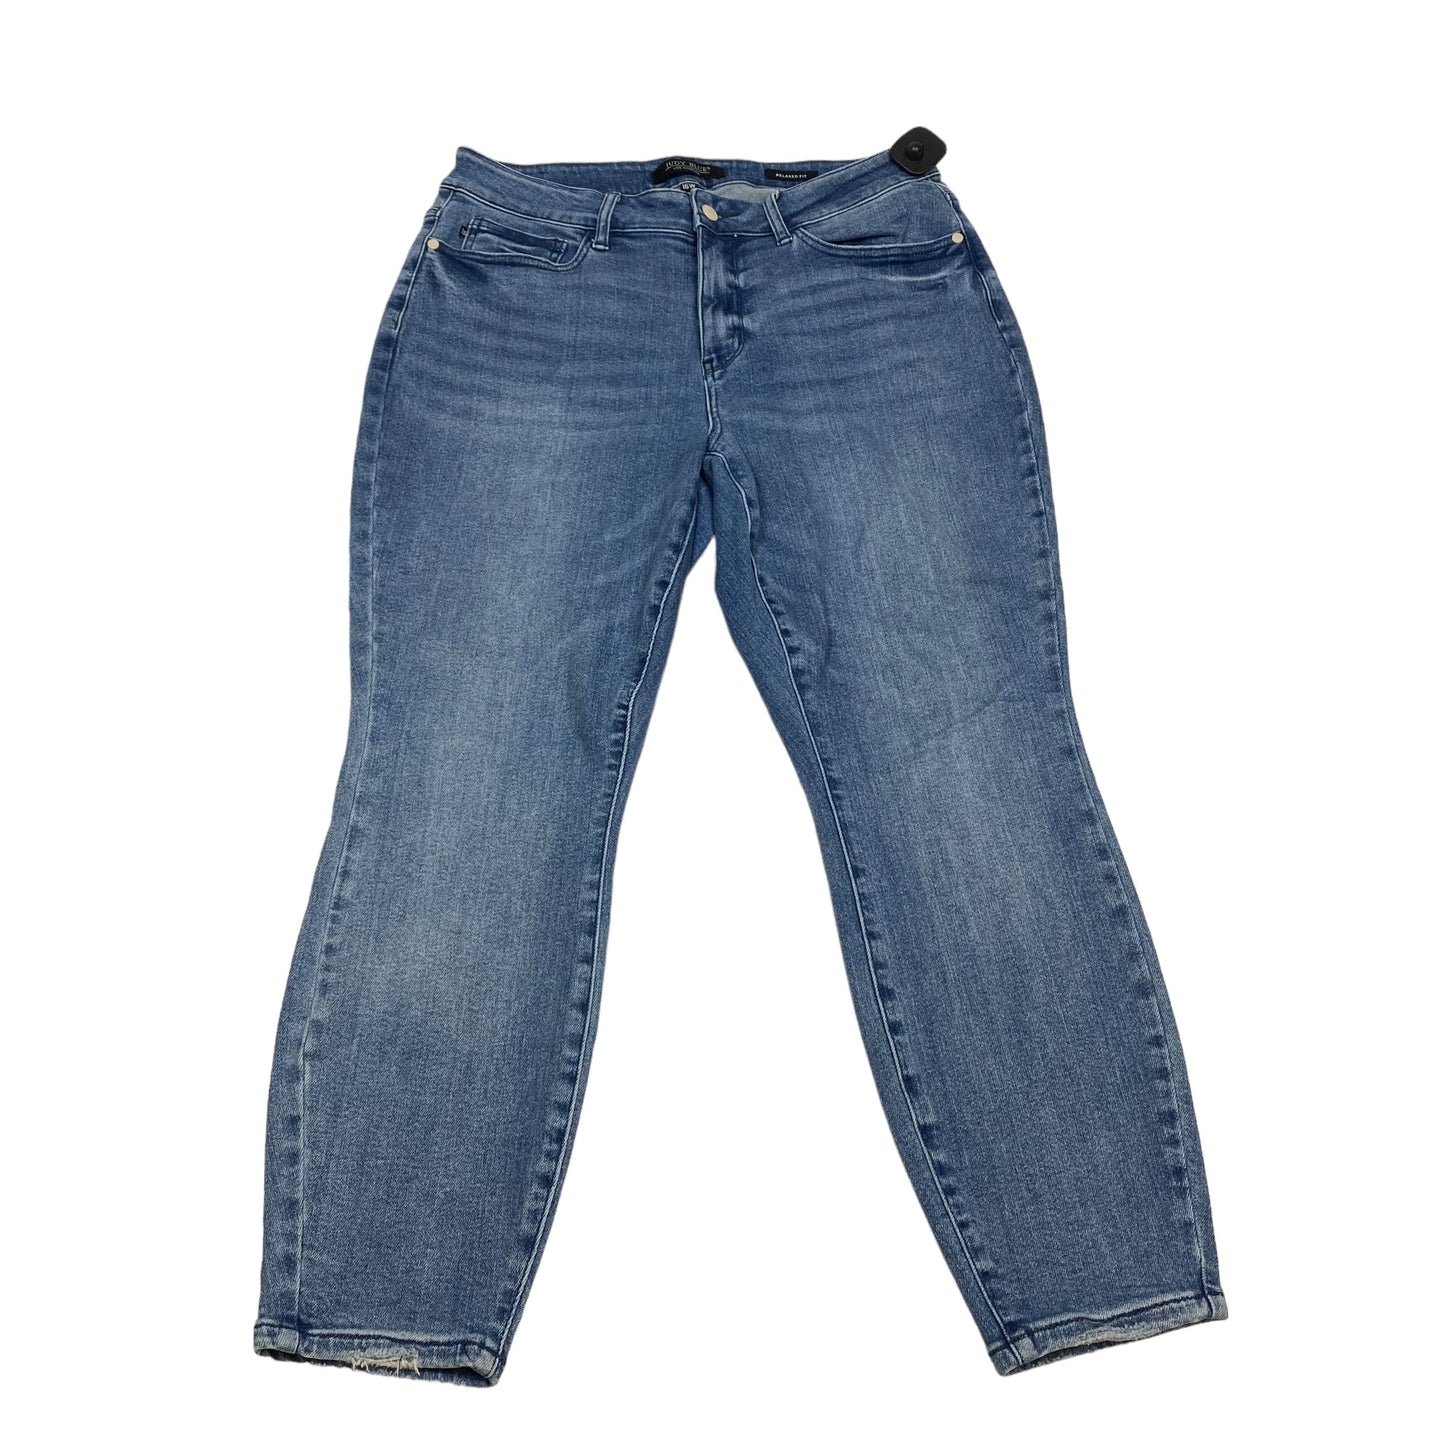 Blue Denim Jeans Skinny Judy Blue, Size 16w